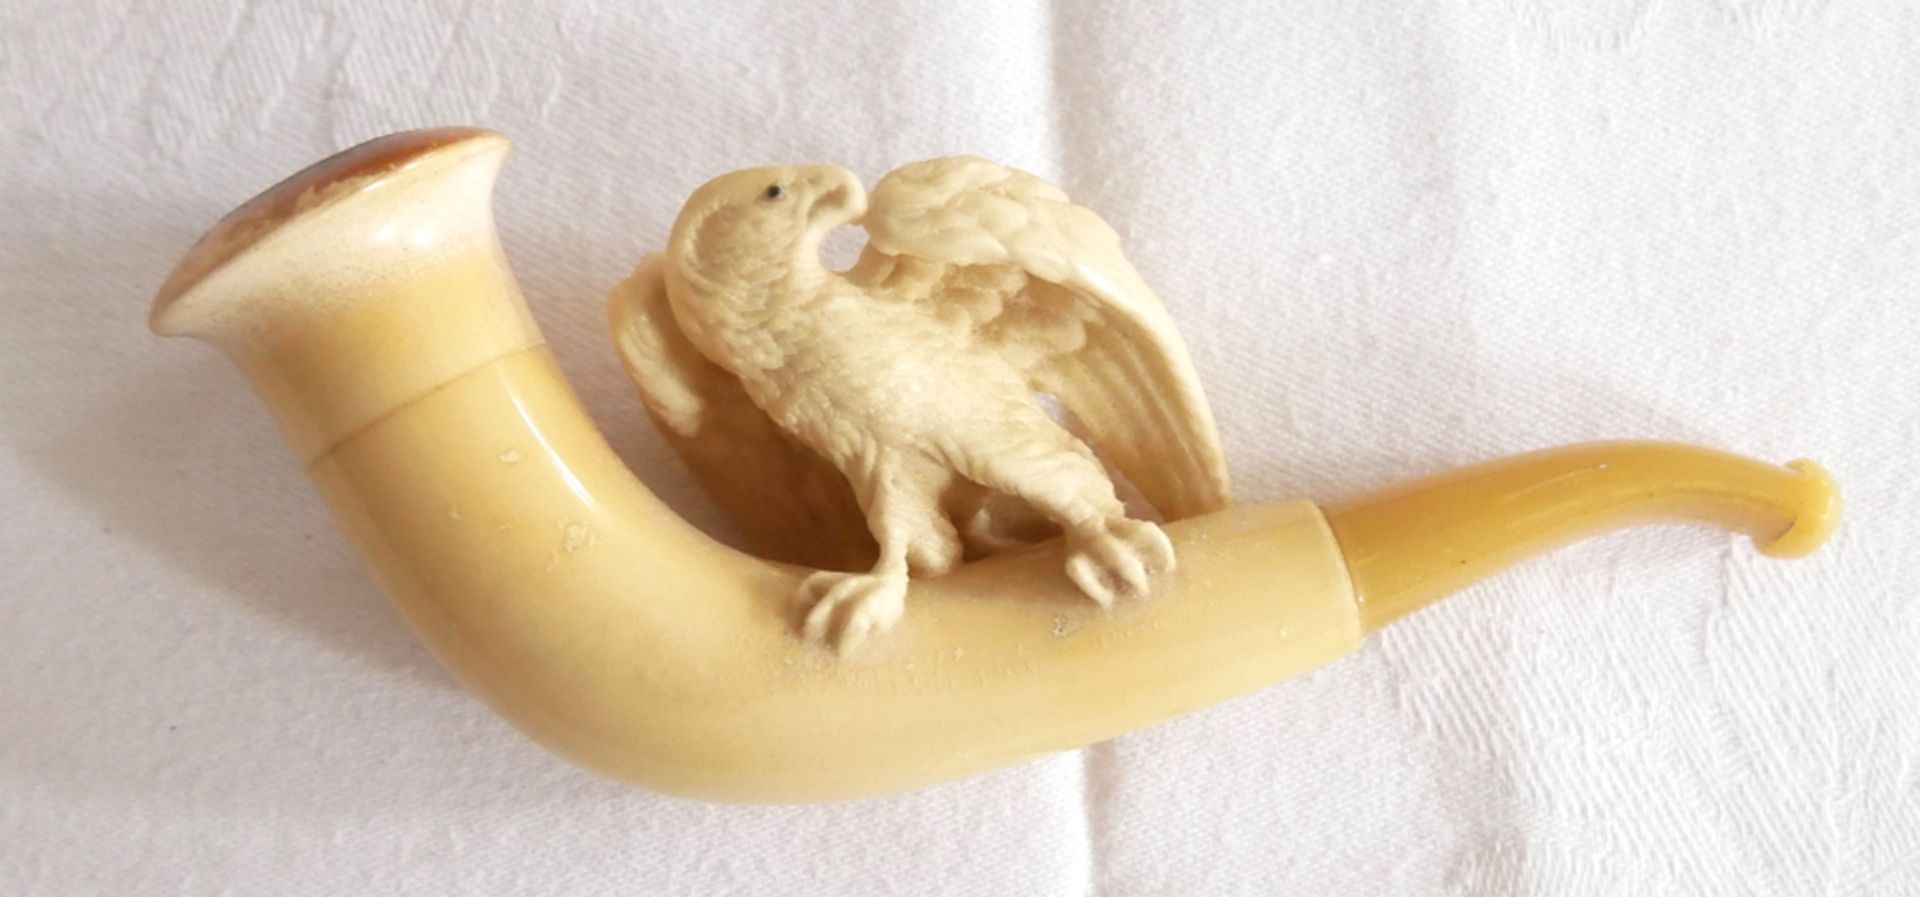 antike Meerschaumpfeife mit geschnitztem Adler, Mundstück aus Bernstein im Etui. - Bild 2 aus 2